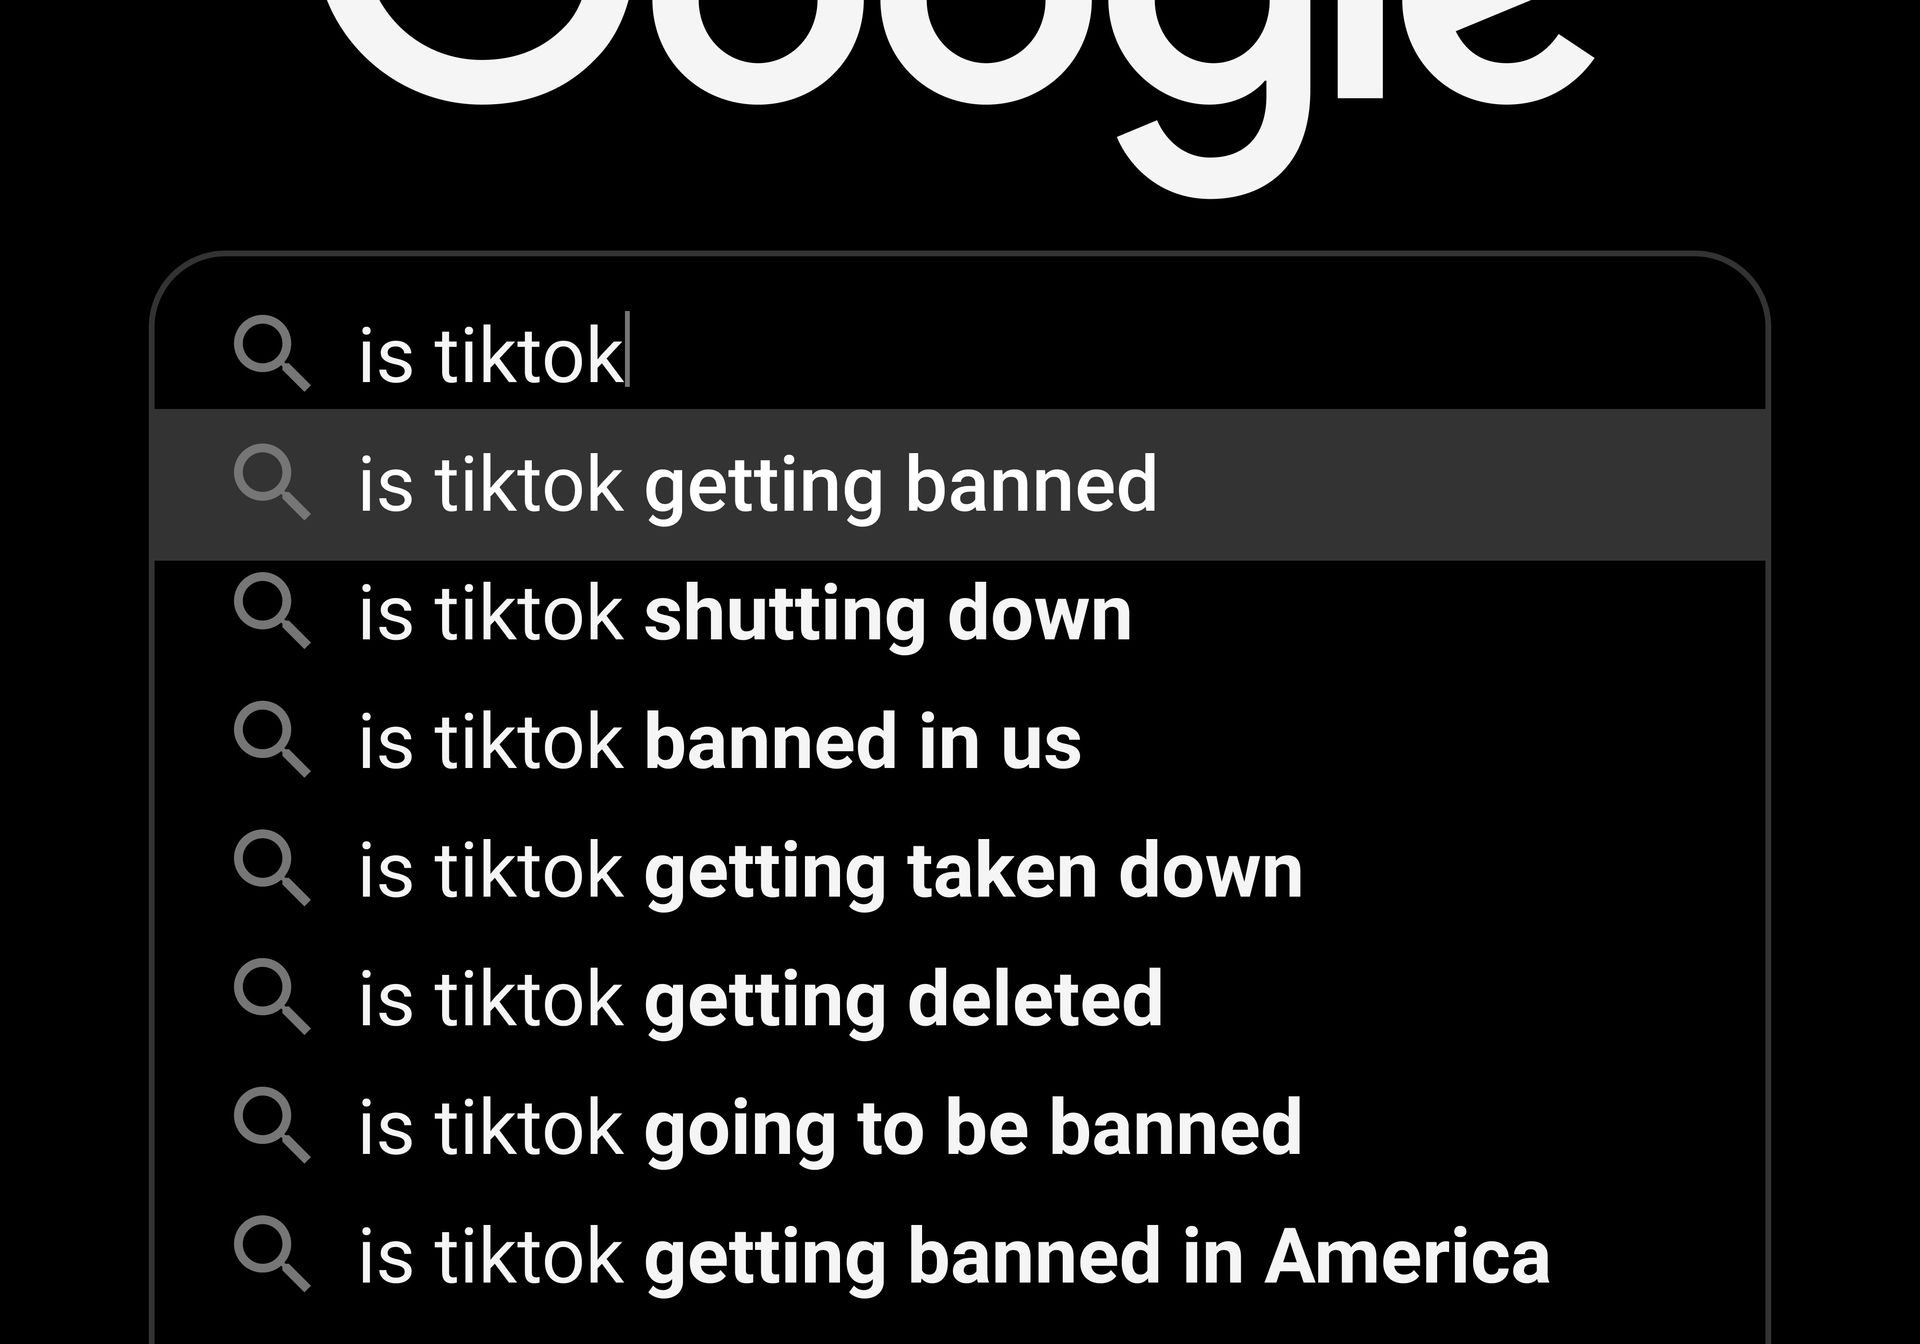 El proyecto de ley de TikTok aprobó la prohibición de TikTok